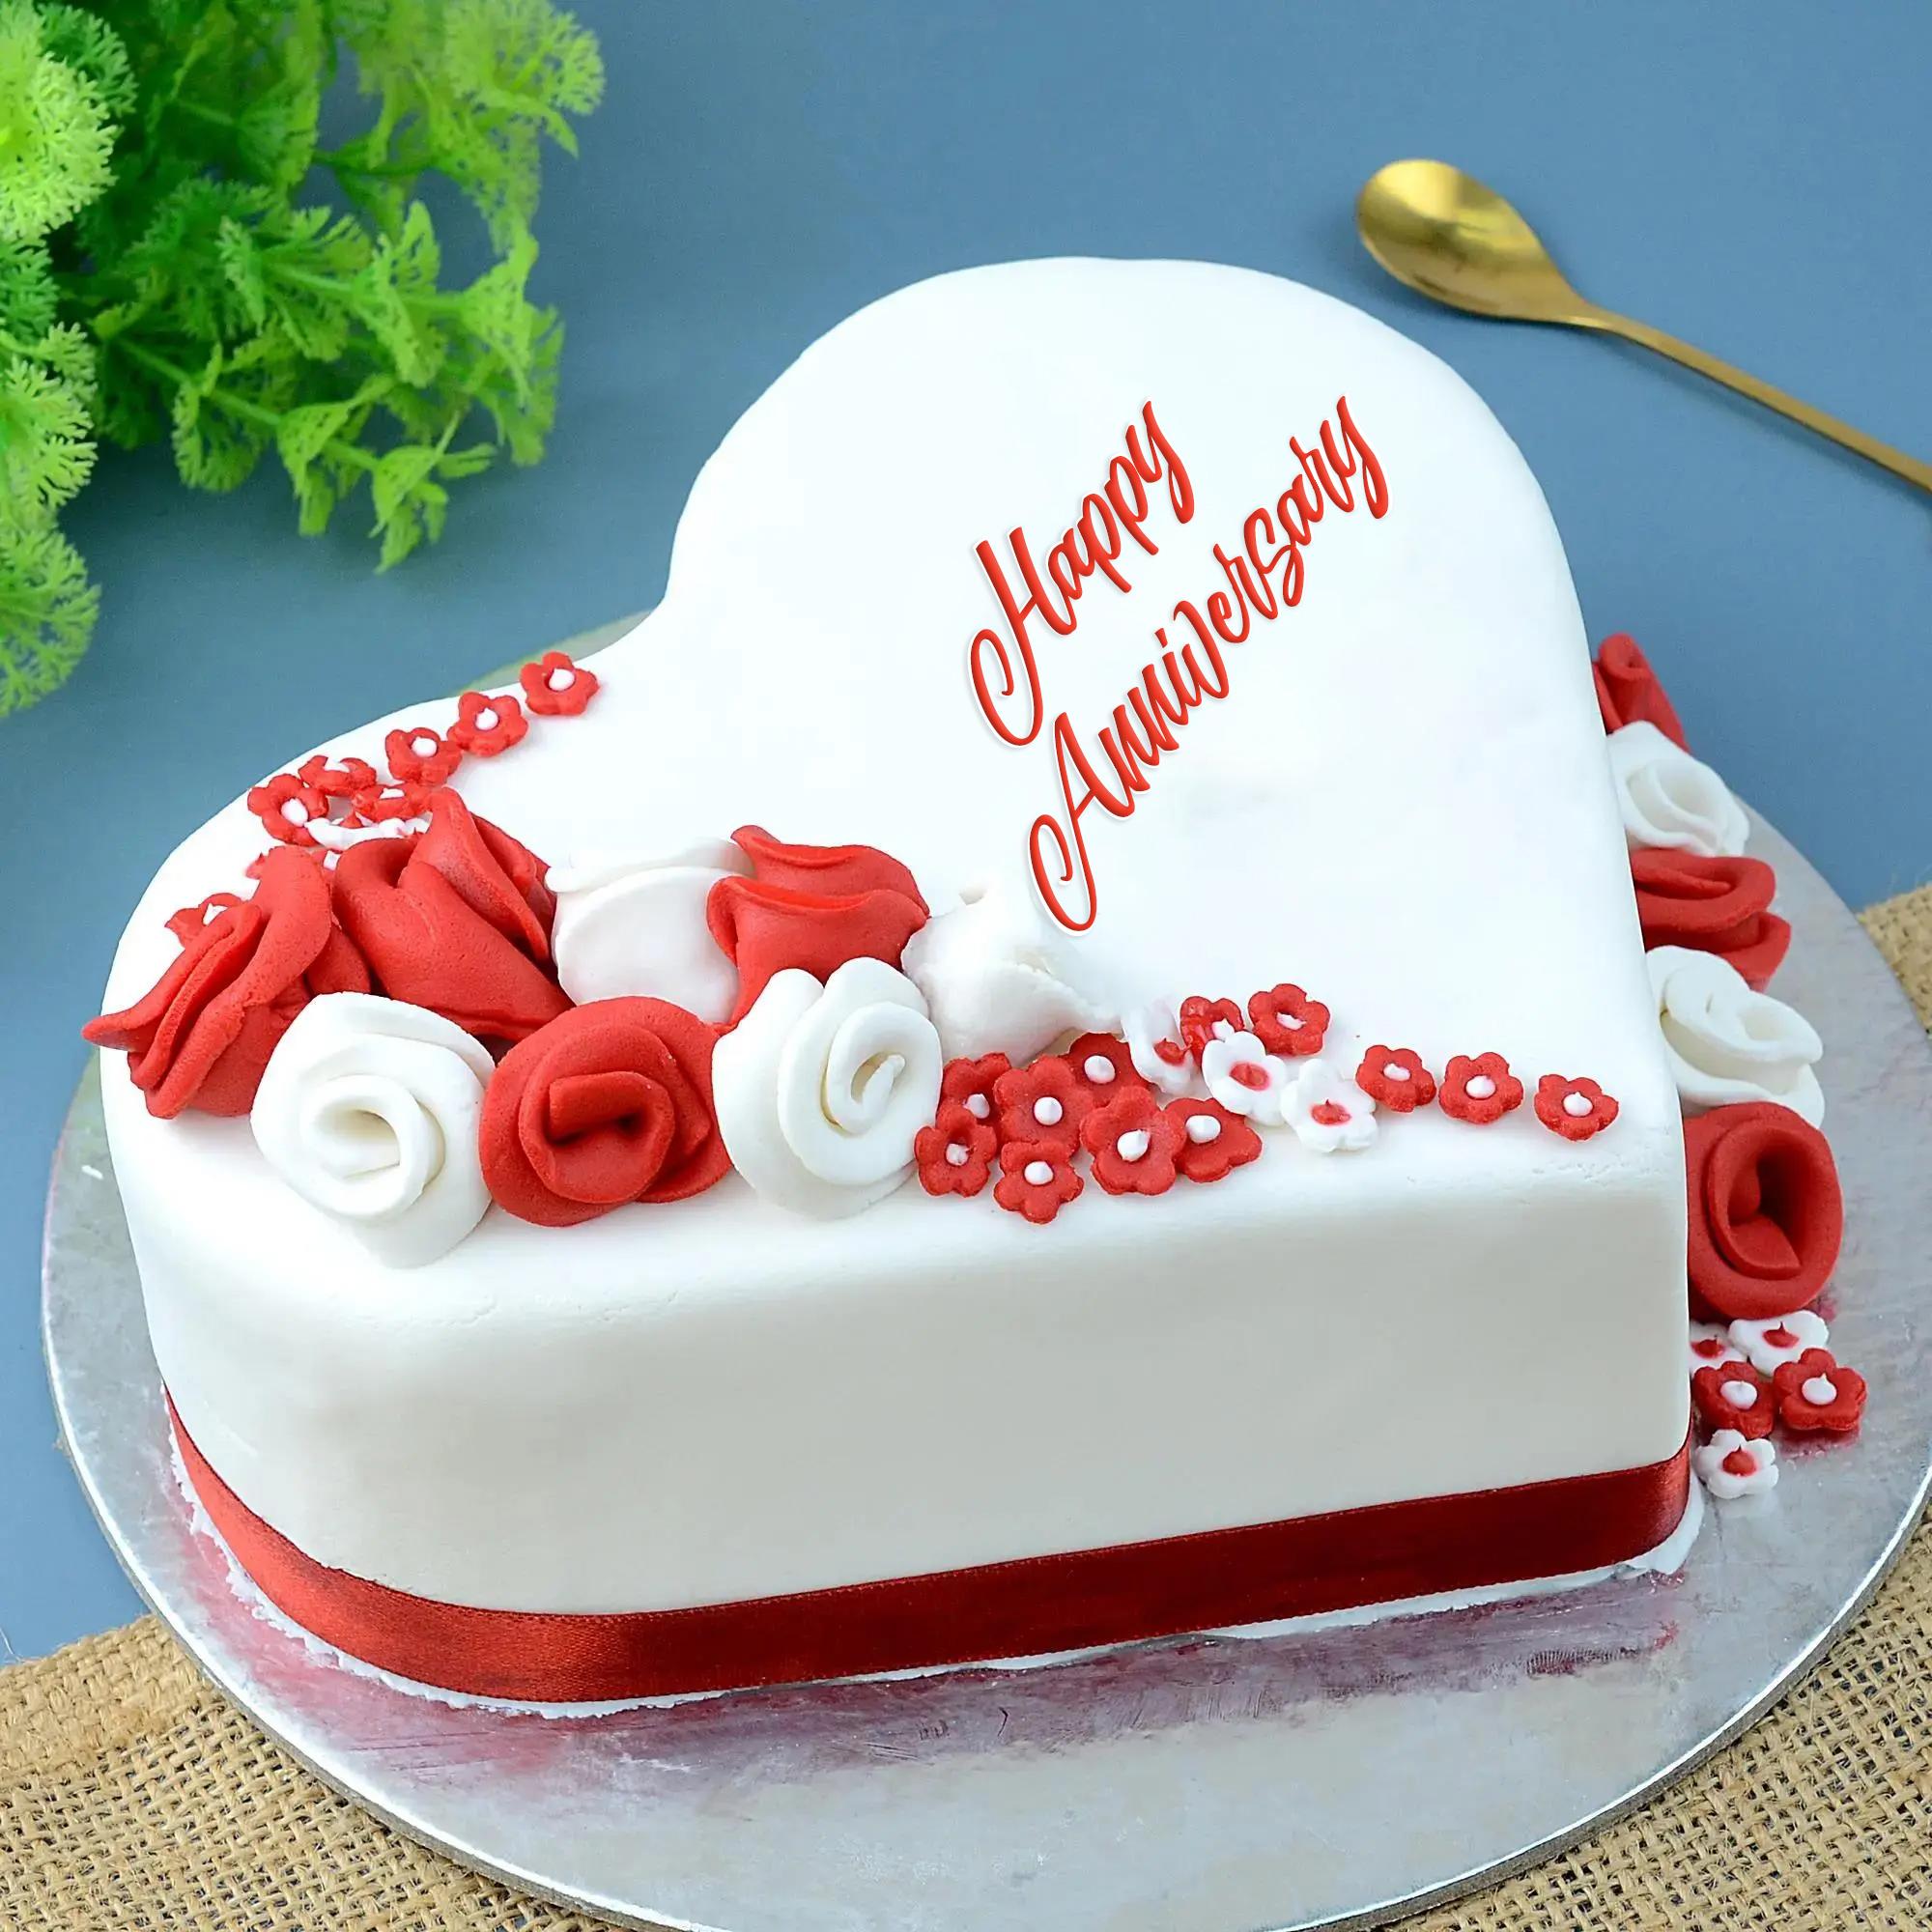 Anniversary Cake With Photo - Amazing White Heart Cake